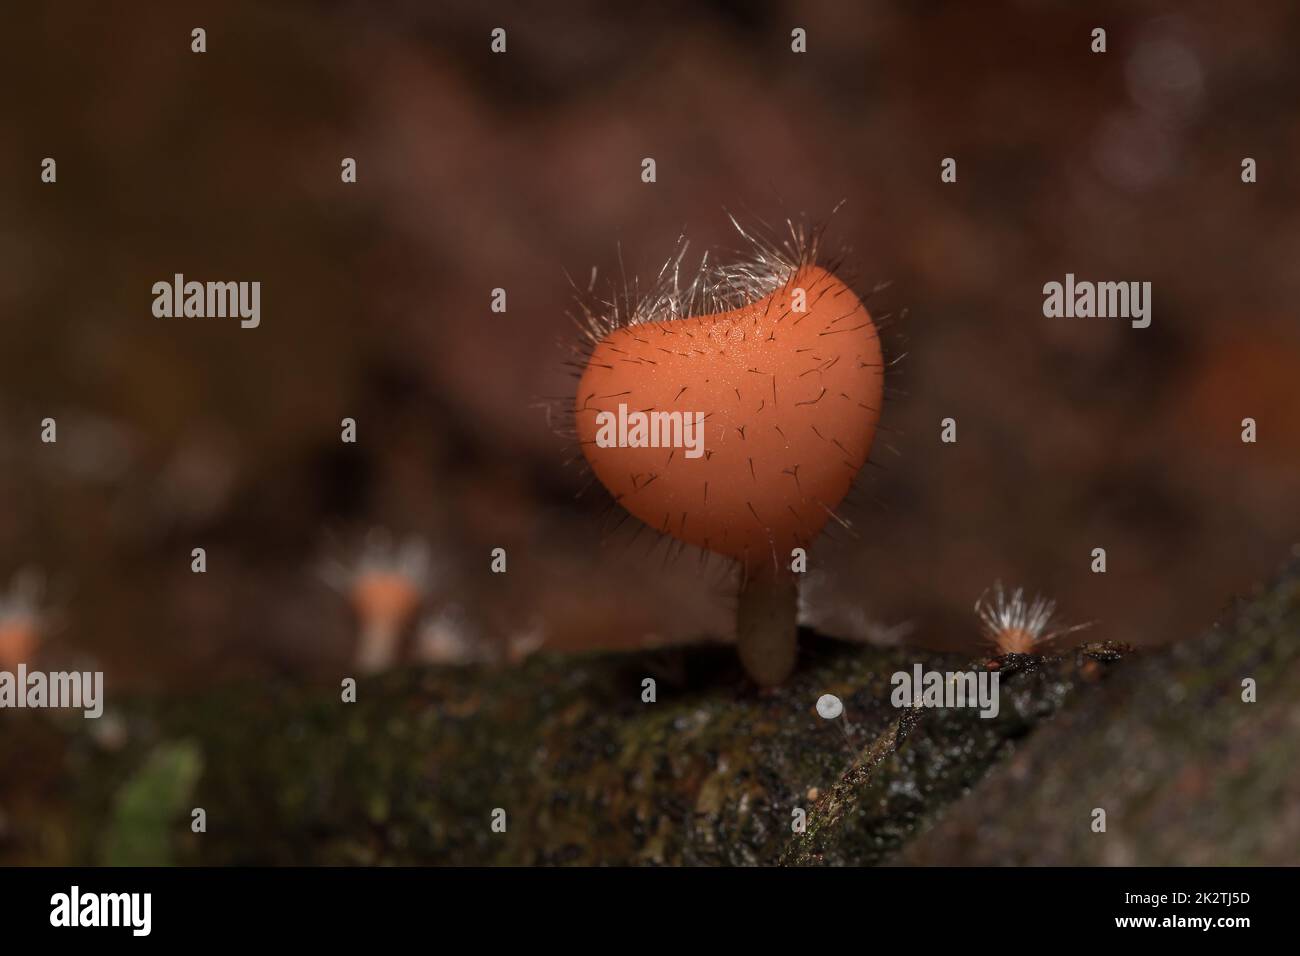 La tazza dei funghi è arancione, rosa, rossa, trovata sulla terra e legname morto. Foto Stock